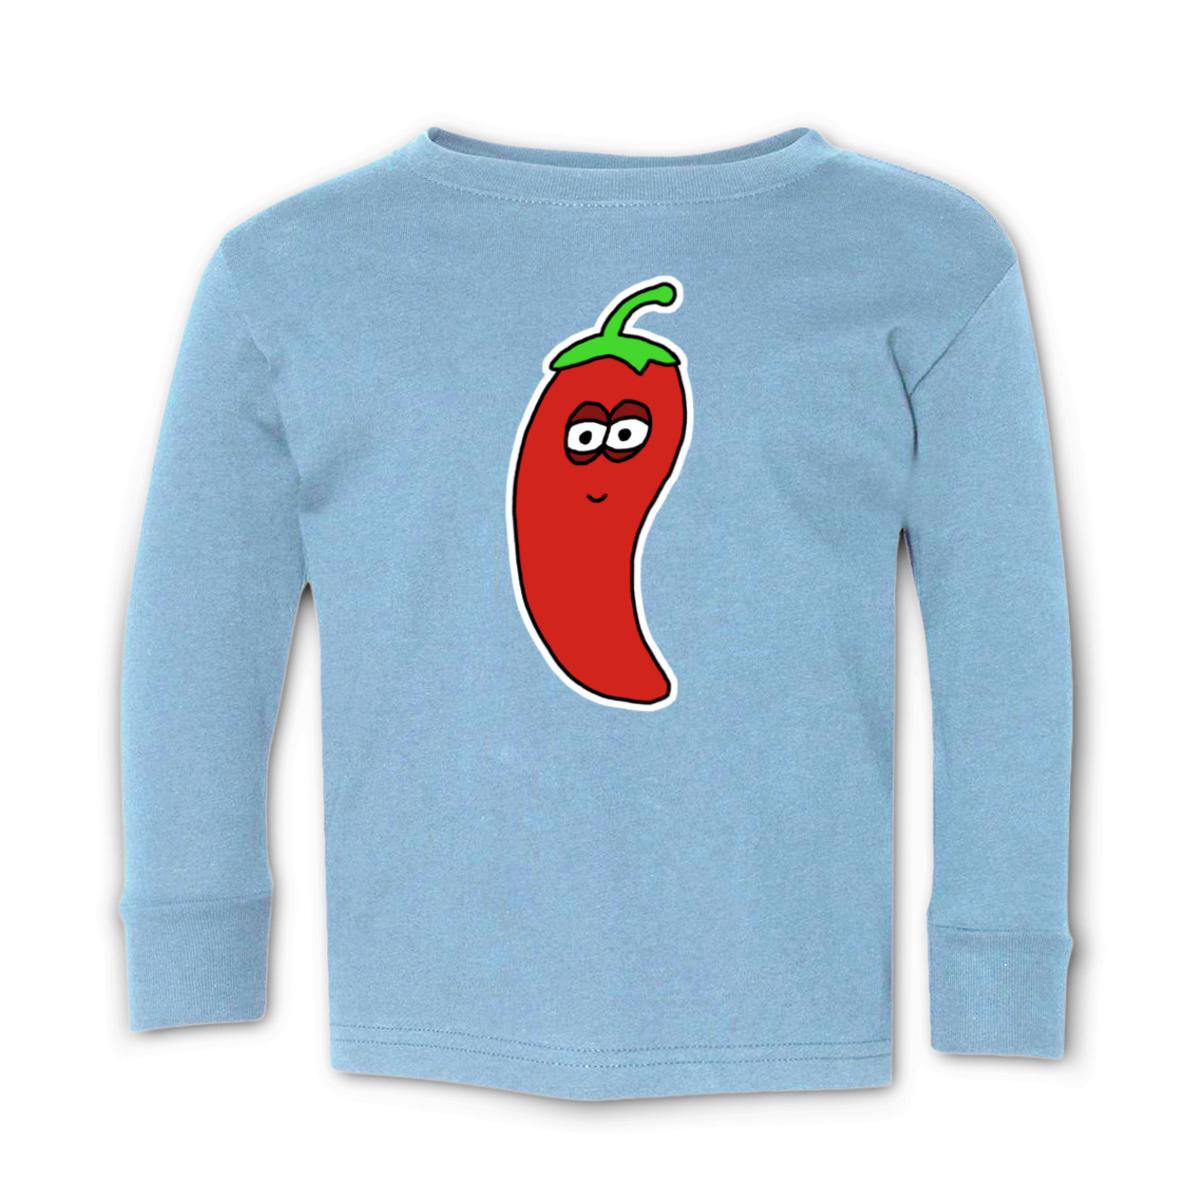 Chili Pepper Toddler Long Sleeve Tee 4T light-blue